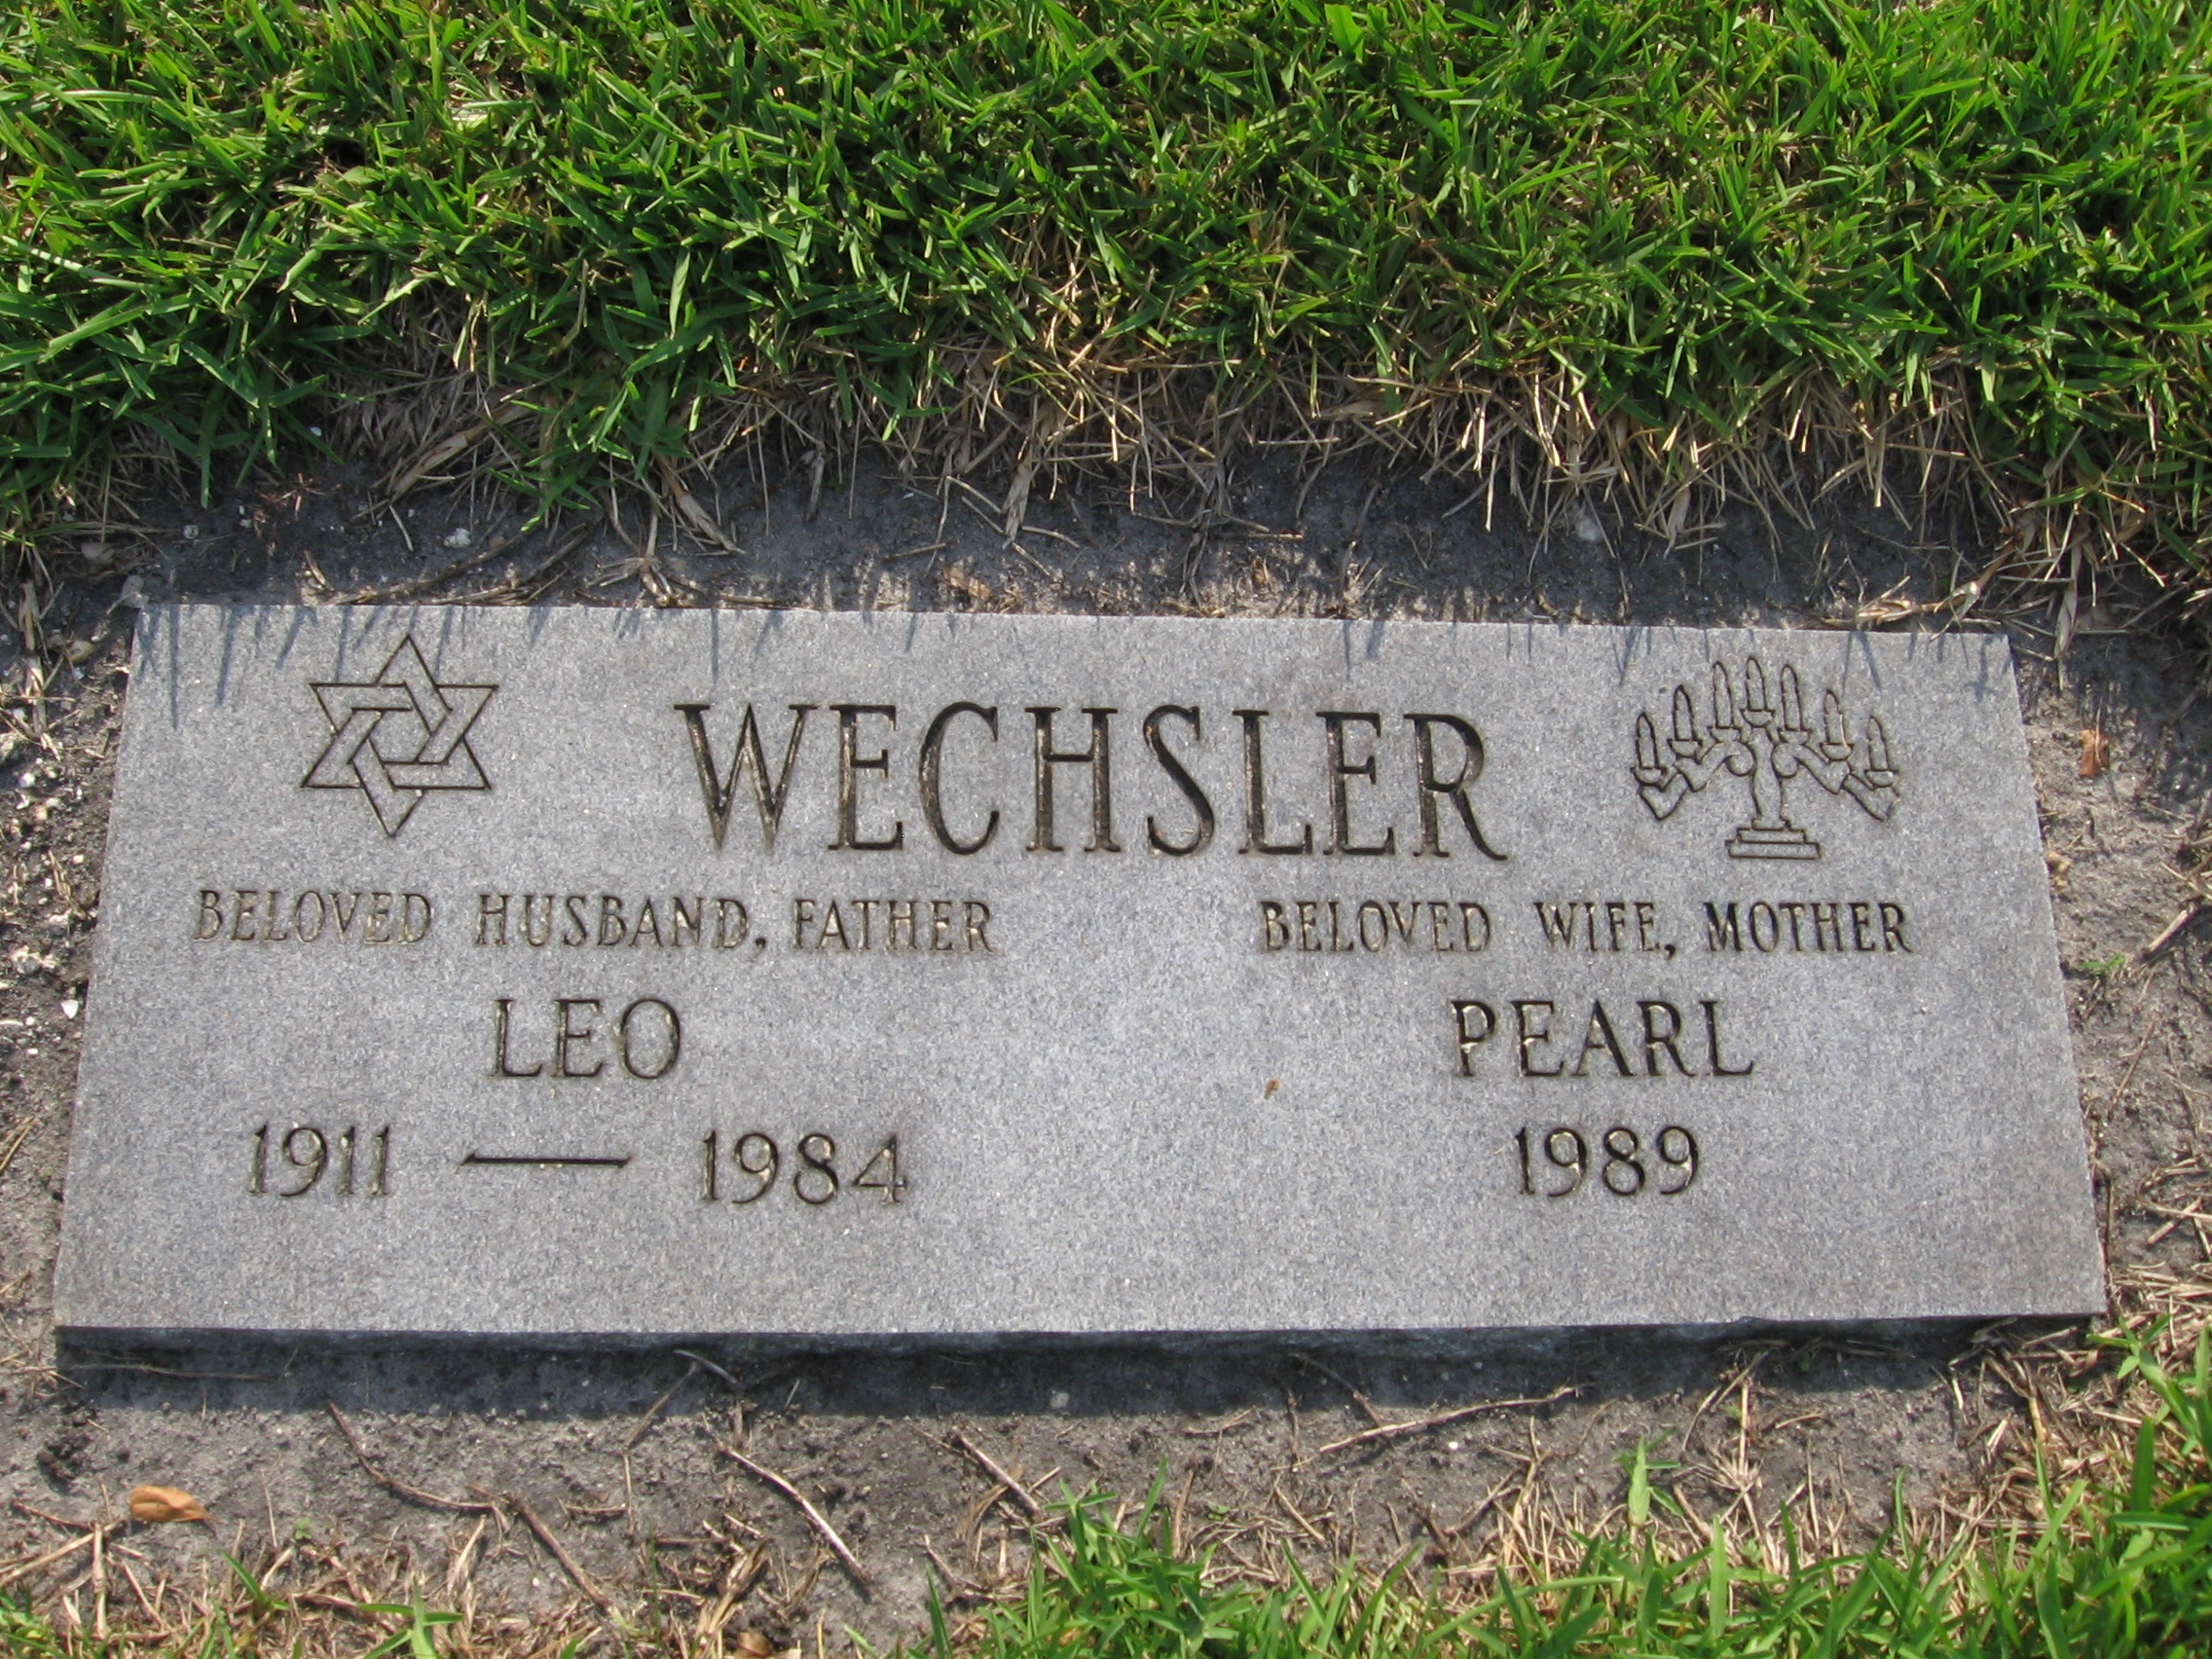 Leo Wechsler